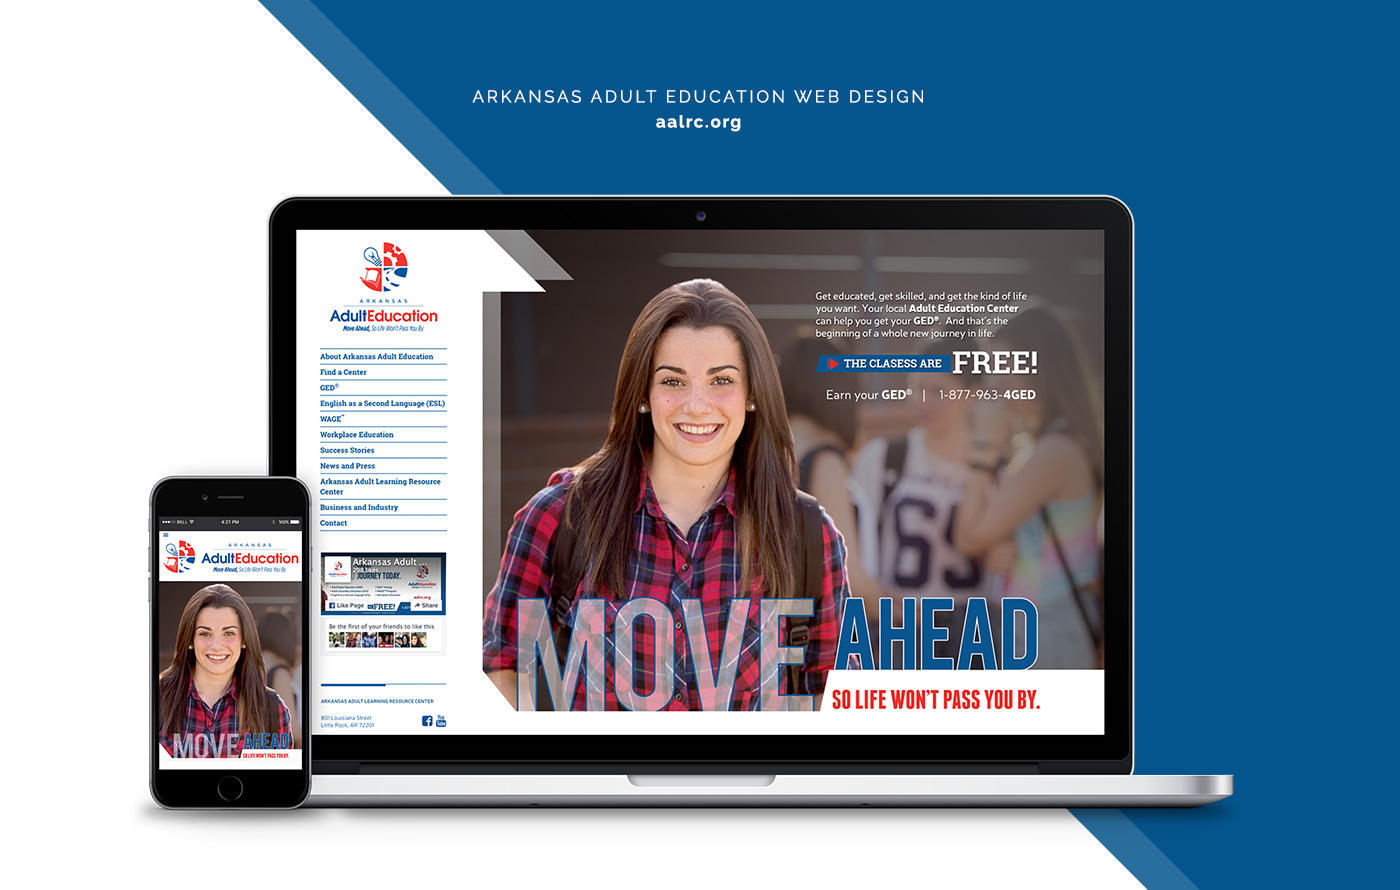 Website GED Arkansas Adult Education Move Ahead